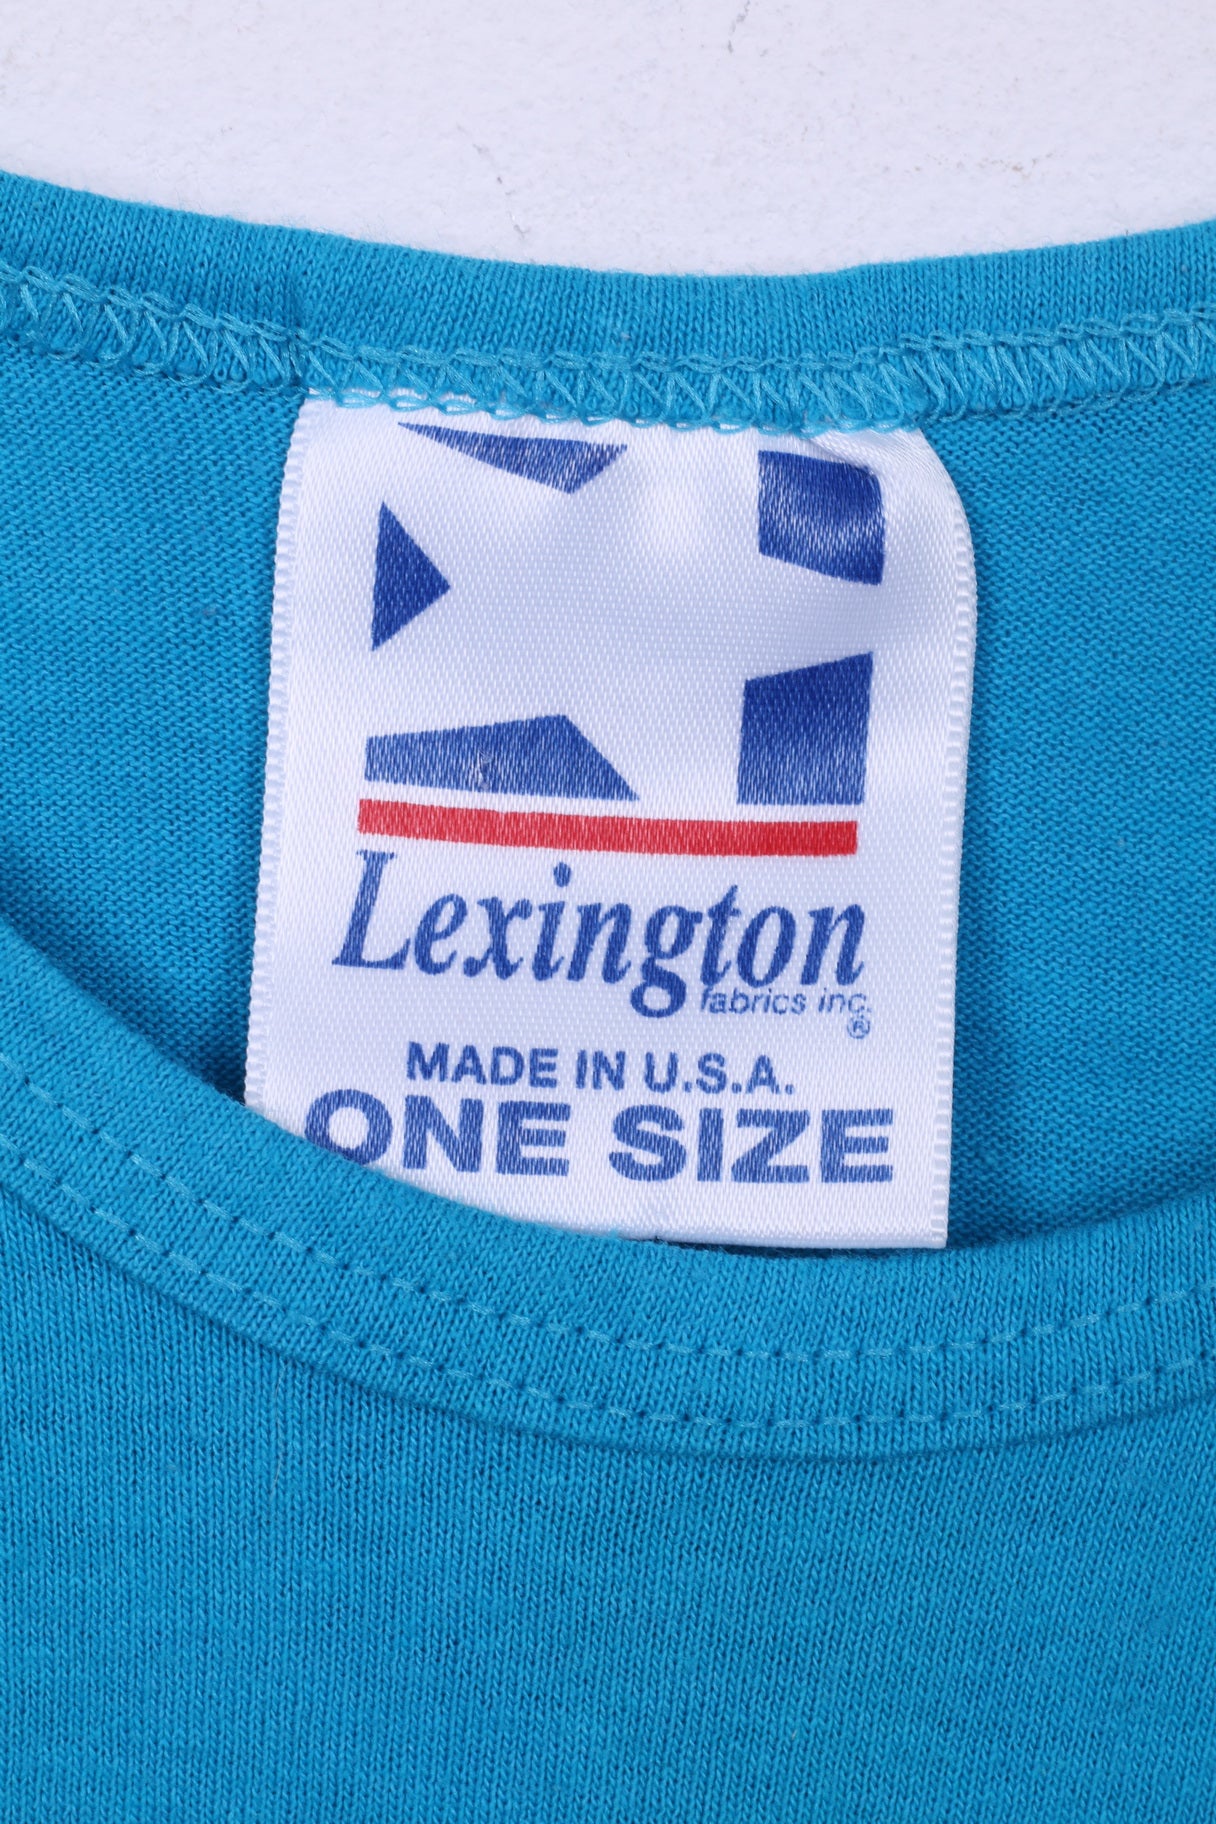 Tessuti Lexington Inc. Abito da donna taglia unica Key Largo cotone senza maniche blu 